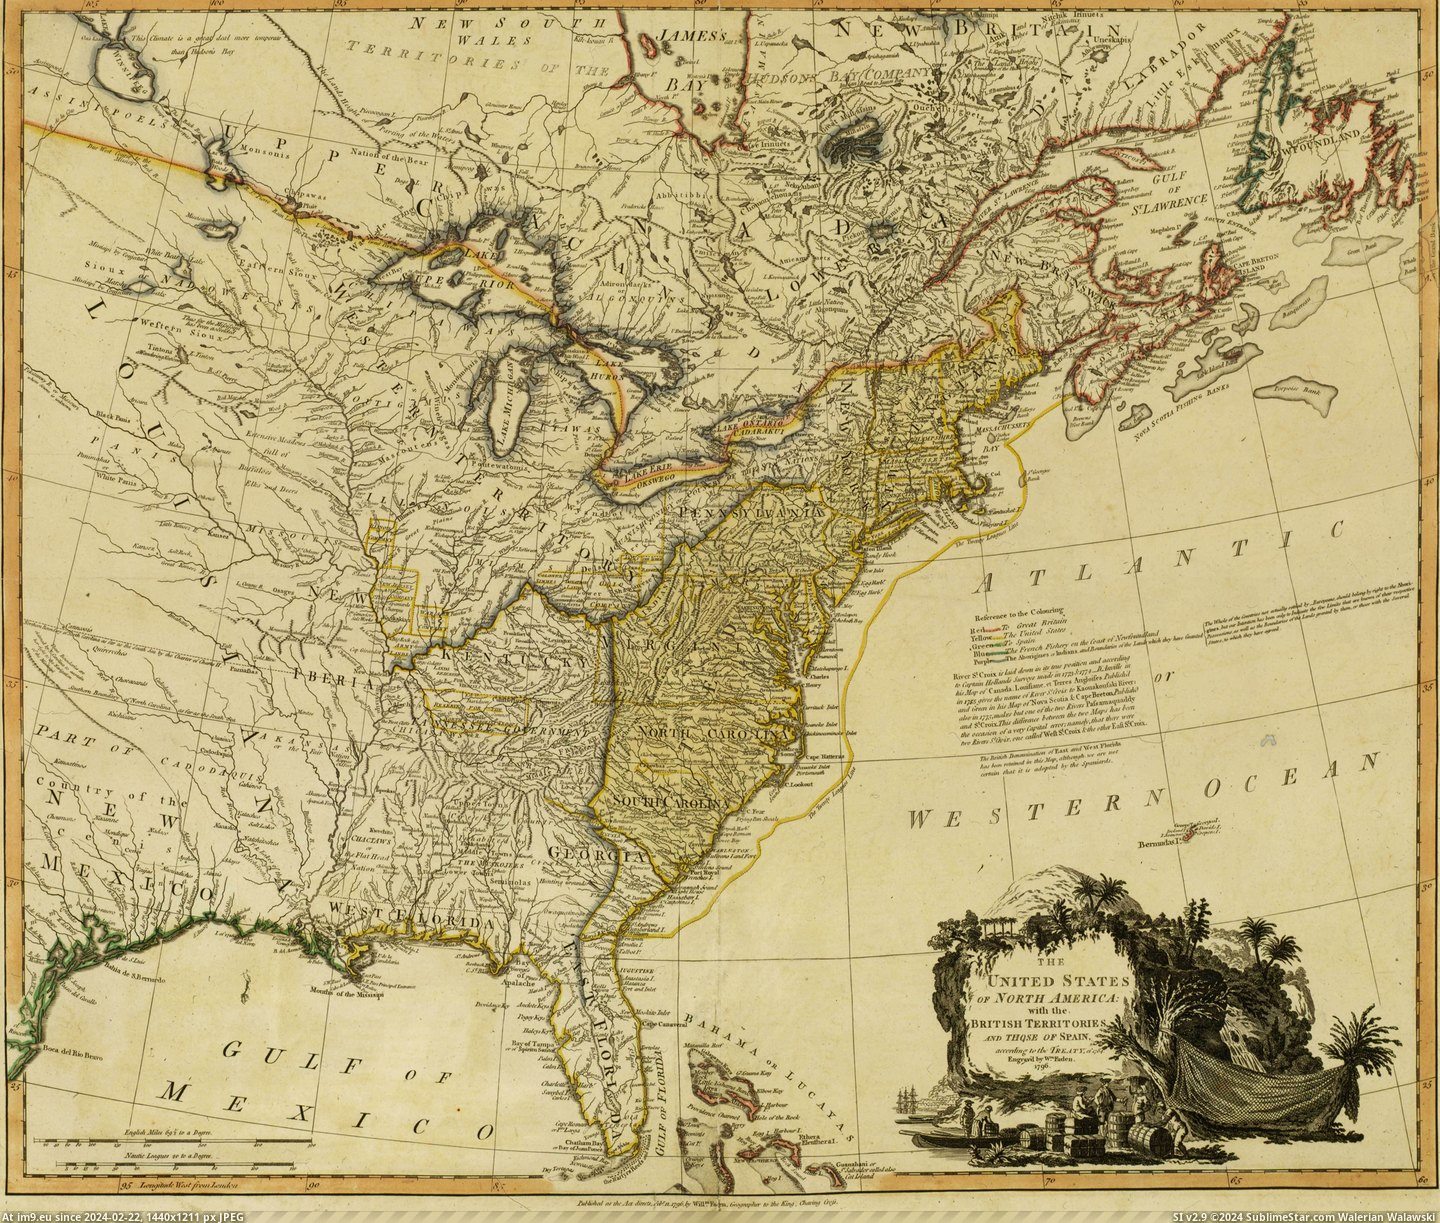 #North #States #America #Spain #Territories #United #British [Mapporn] The United States of North America with the British territories and those of Spain (1796) [4968×4191] Pic. (Bild von album My r/MAPS favs))